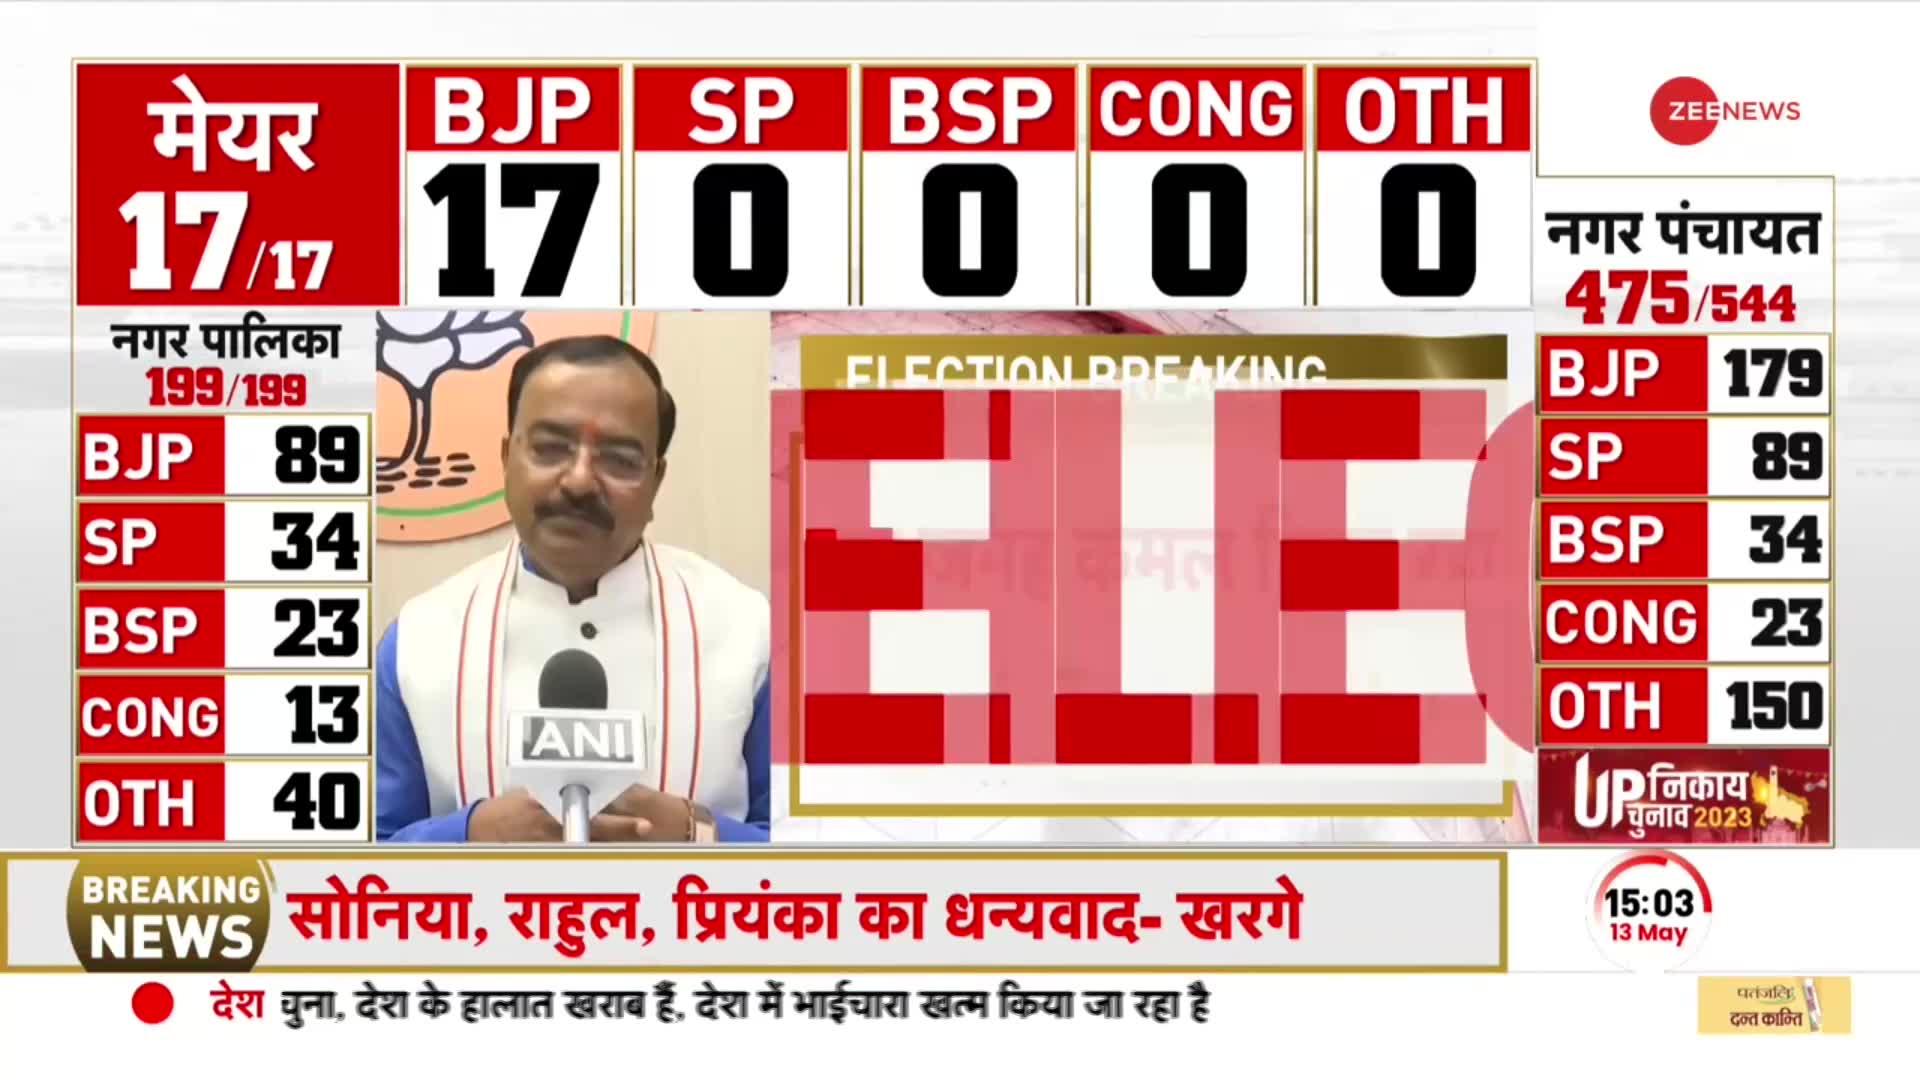 UP Nikay Chunav Results 2023: बंपर जीत के बाद केशव प्रसाद मौर्य बोले, BSP-SP का सूपड़ा साफ है